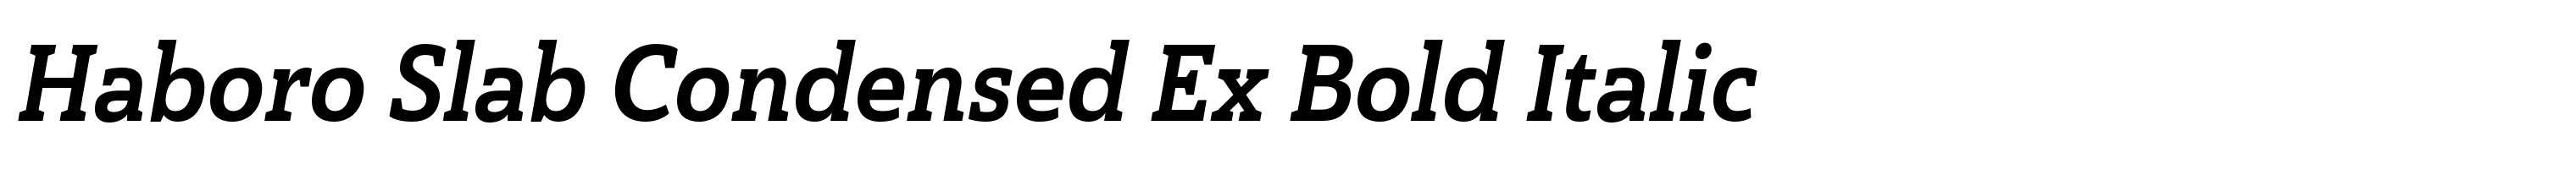 Haboro Slab Condensed Ex Bold Italic